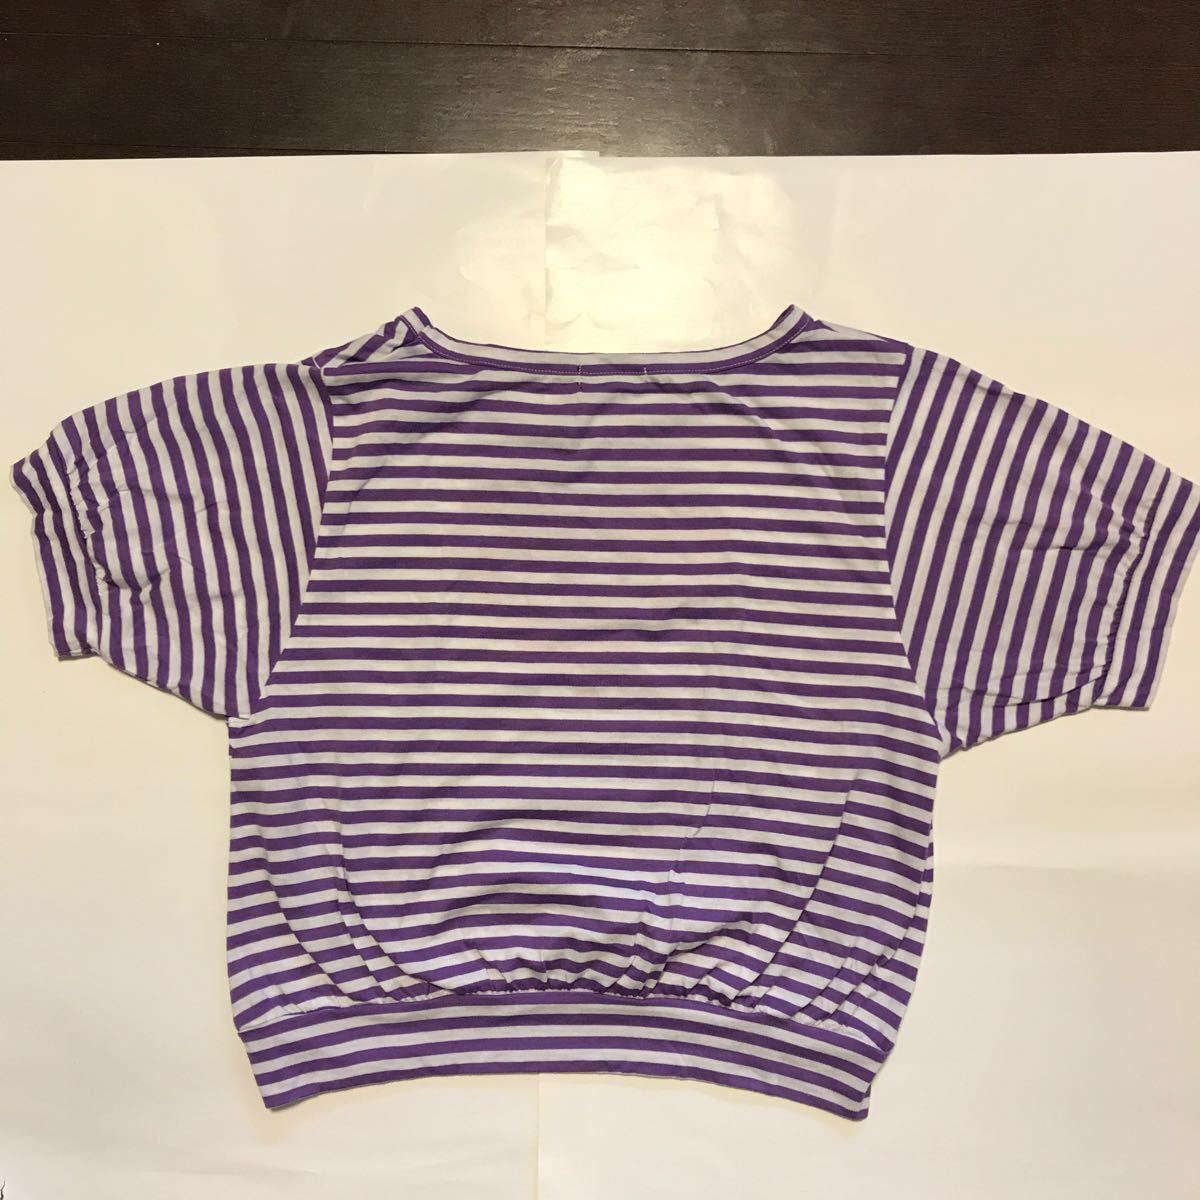 半袖 Tシャツ レディース トップス ボーダー ハート ティーンズ 紫 パープル シャツ キッズ ジュニア 子供 女児 赤 女子